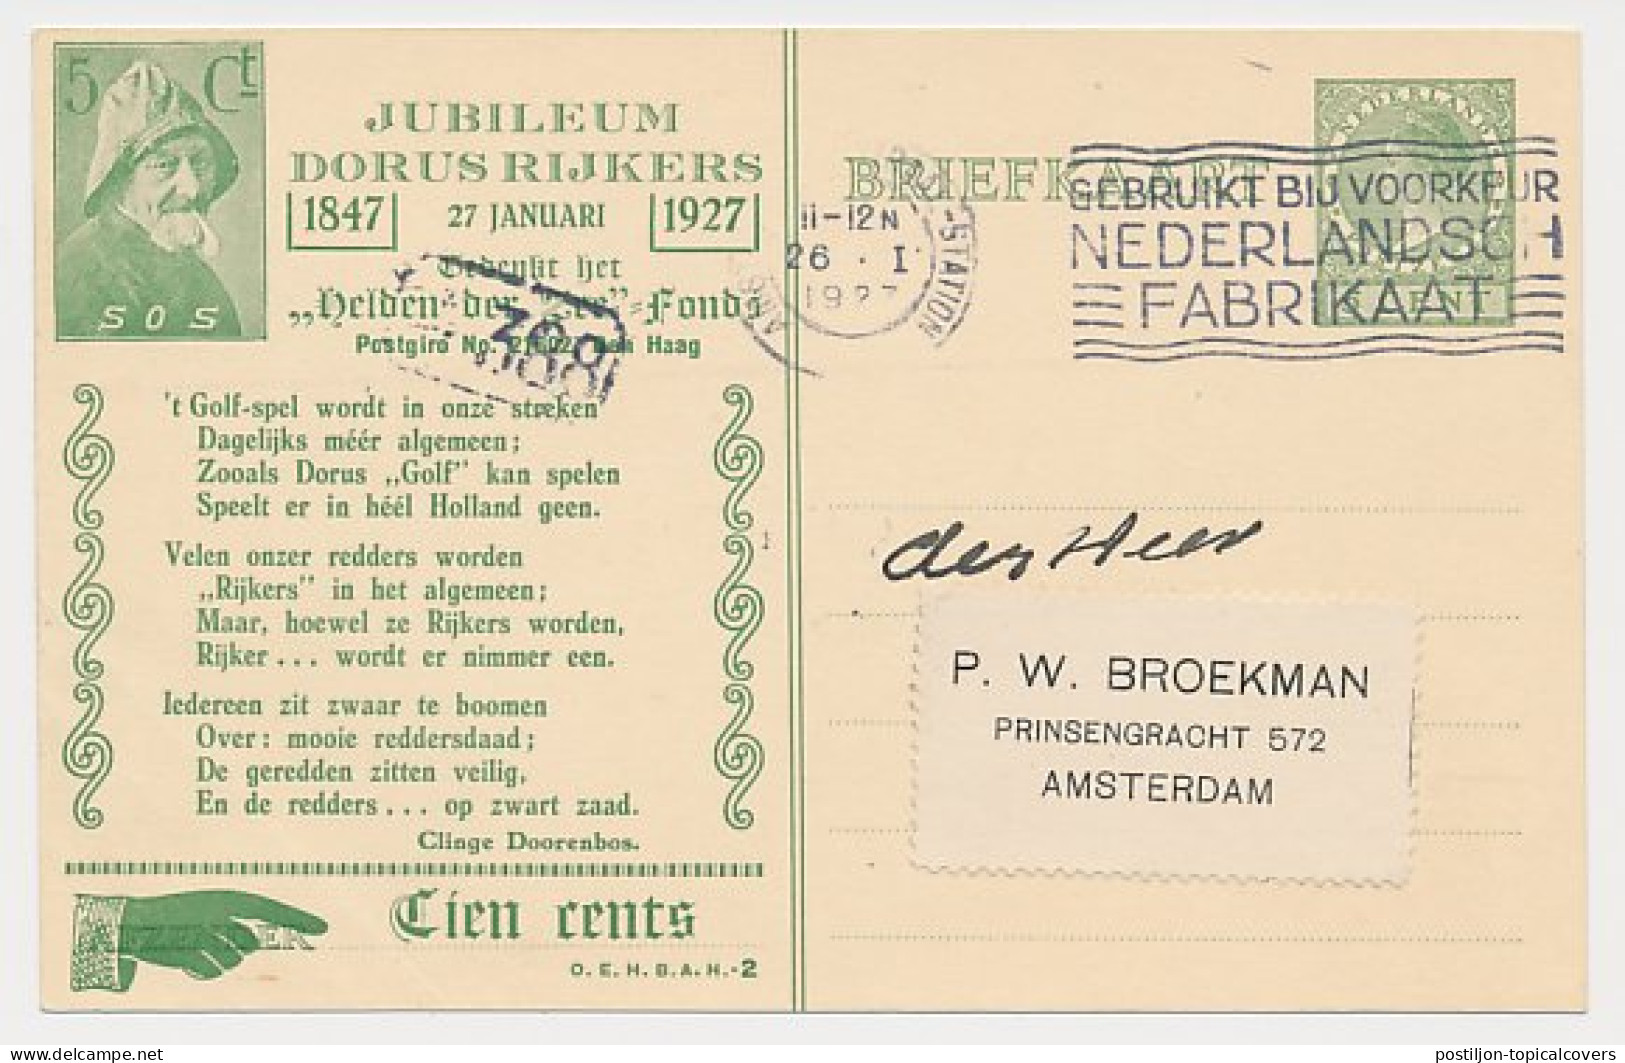 Particuliere Briefkaart Geuzendam DR19 - Vroegst Bekende Datum - Postal Stationery